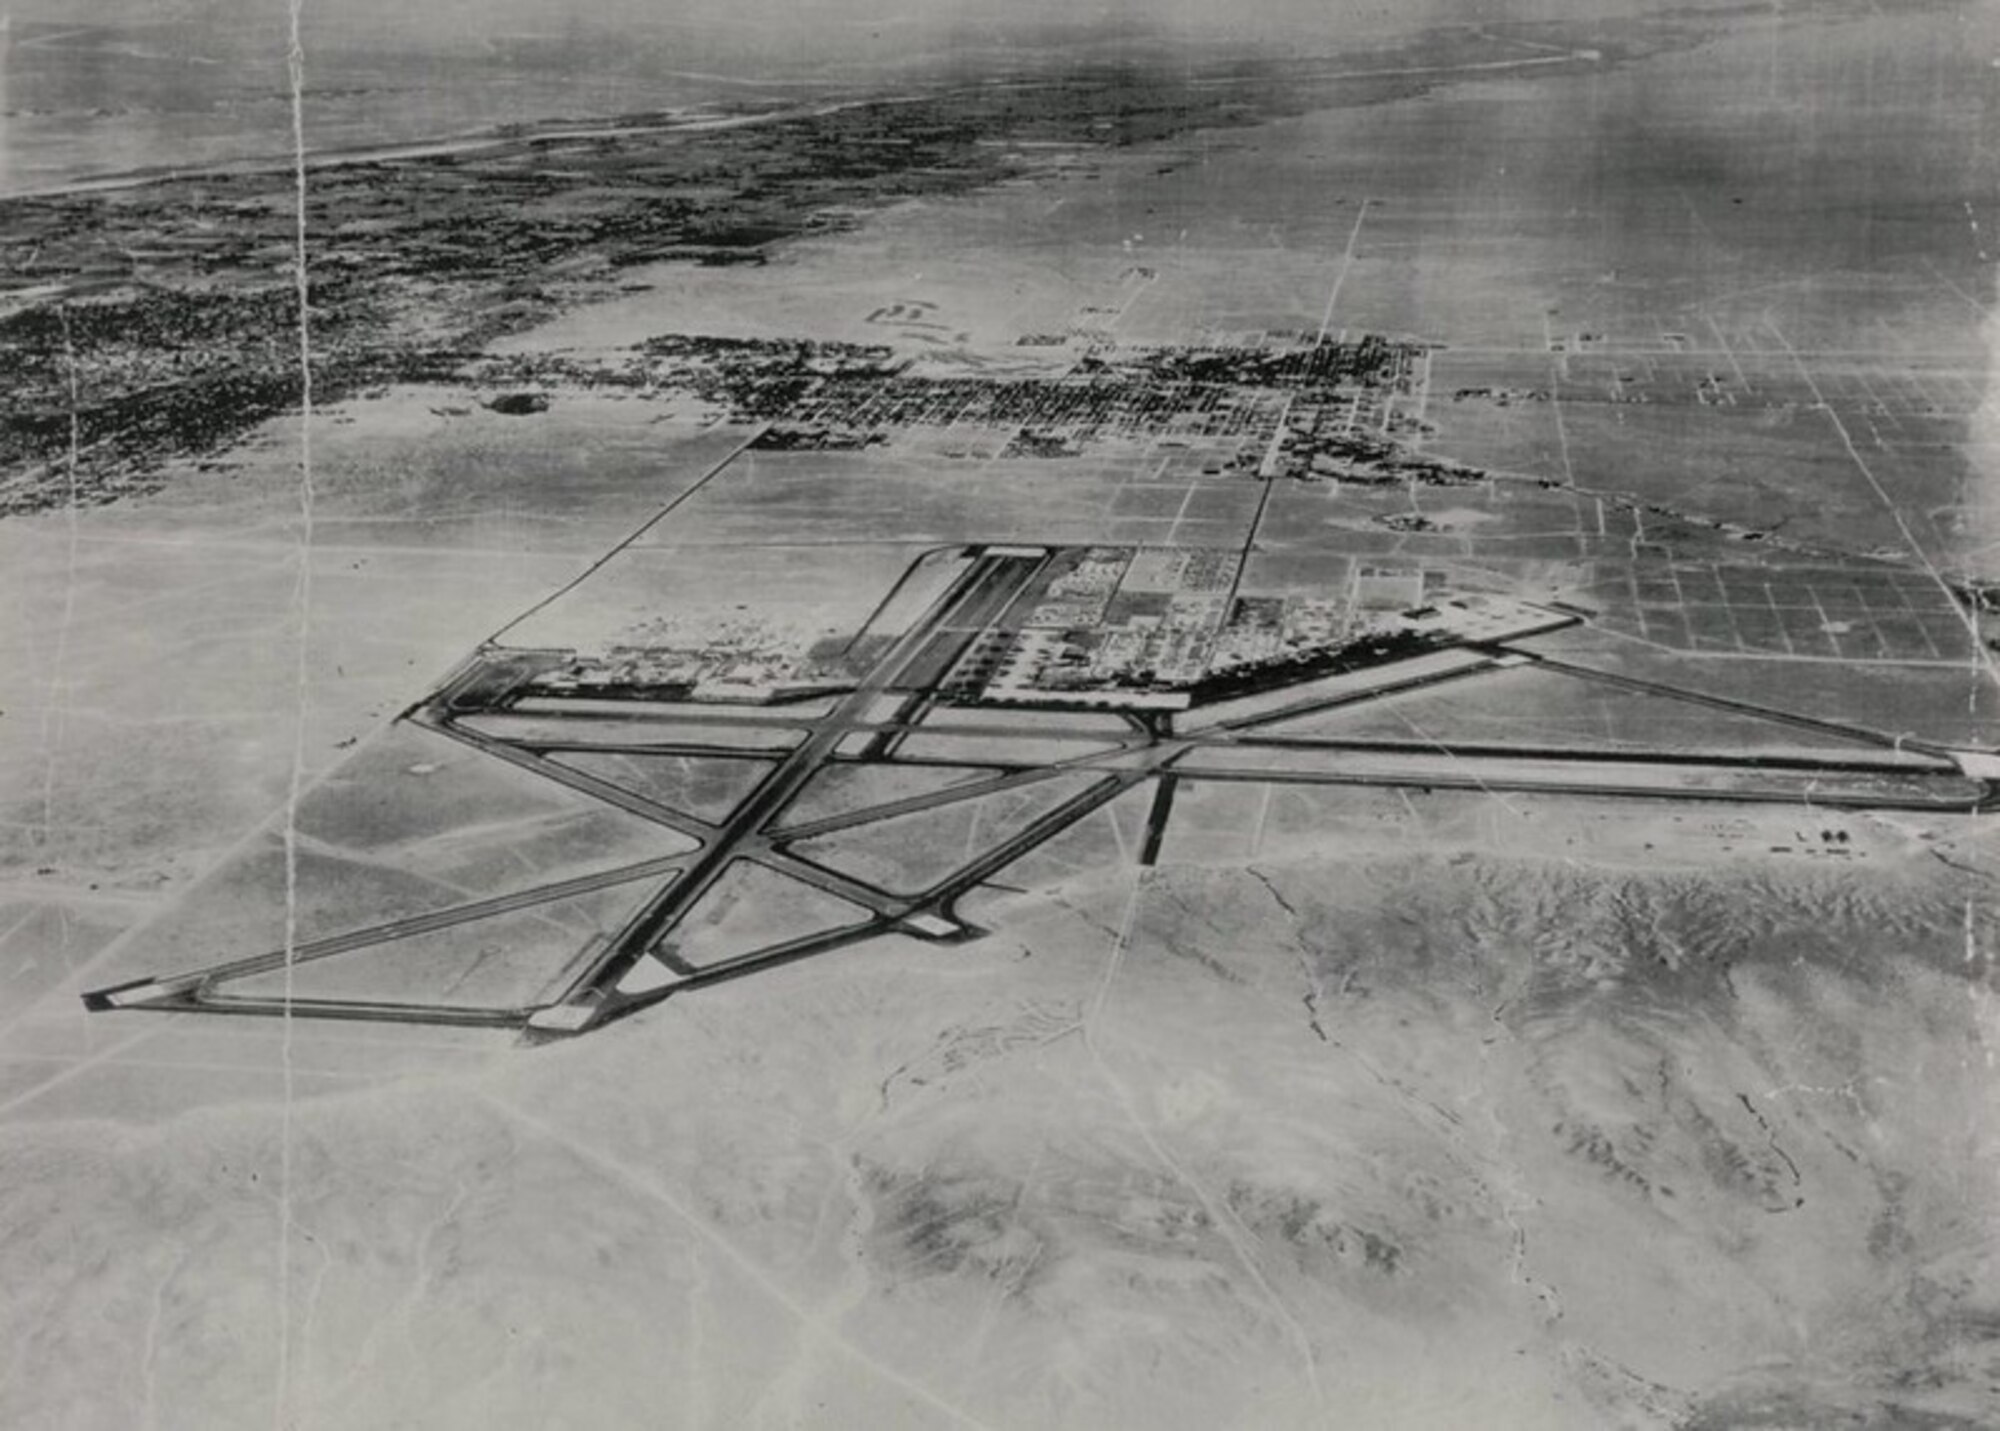 Aerial photo of Kirtland Field, N.M. in 1943.